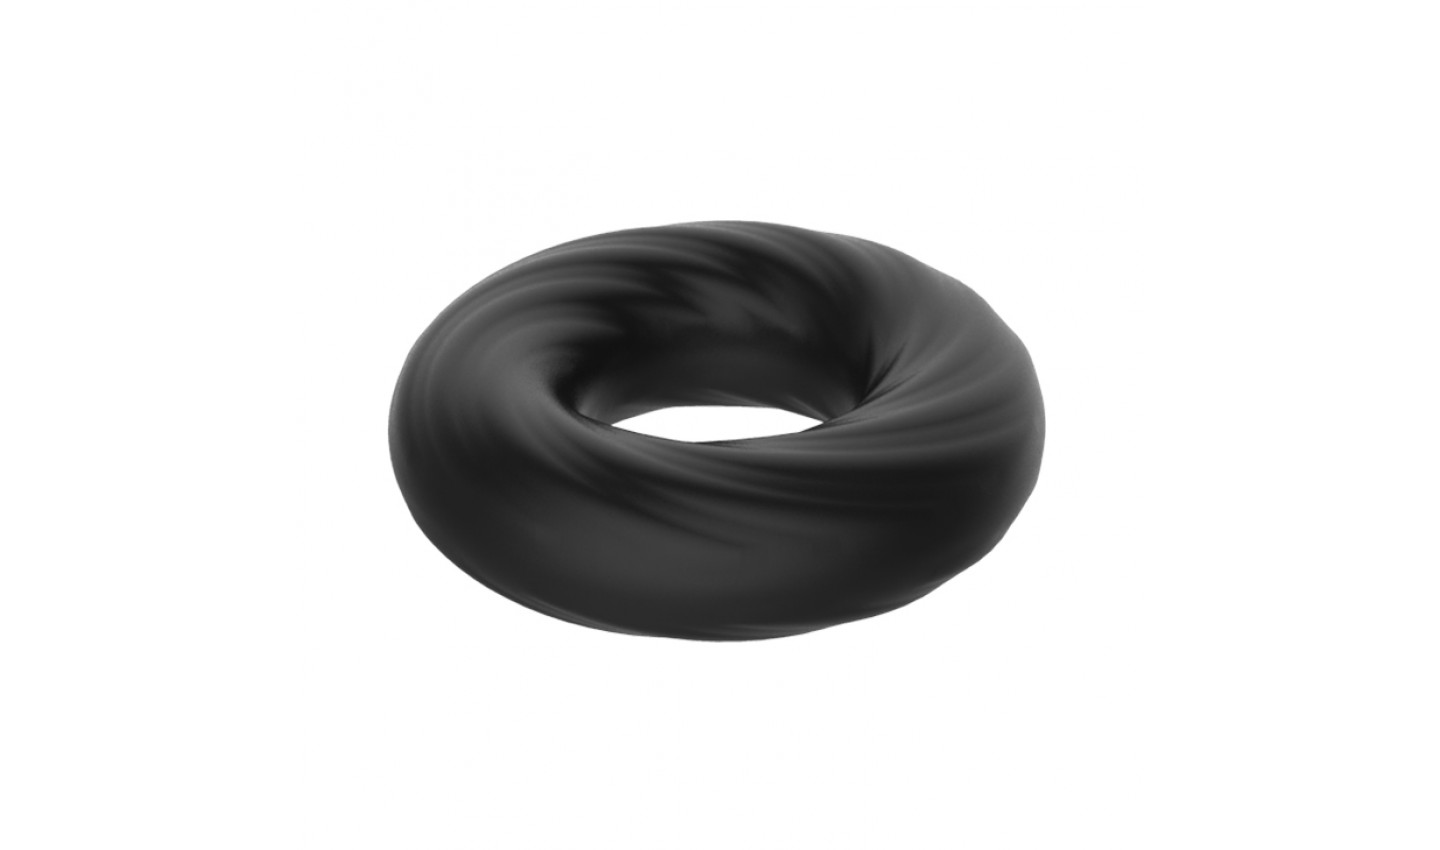 Эластичное эрекционное кольцо CRAZY BULL SUPER SOFT,  силикон,  , черное,  5 см 